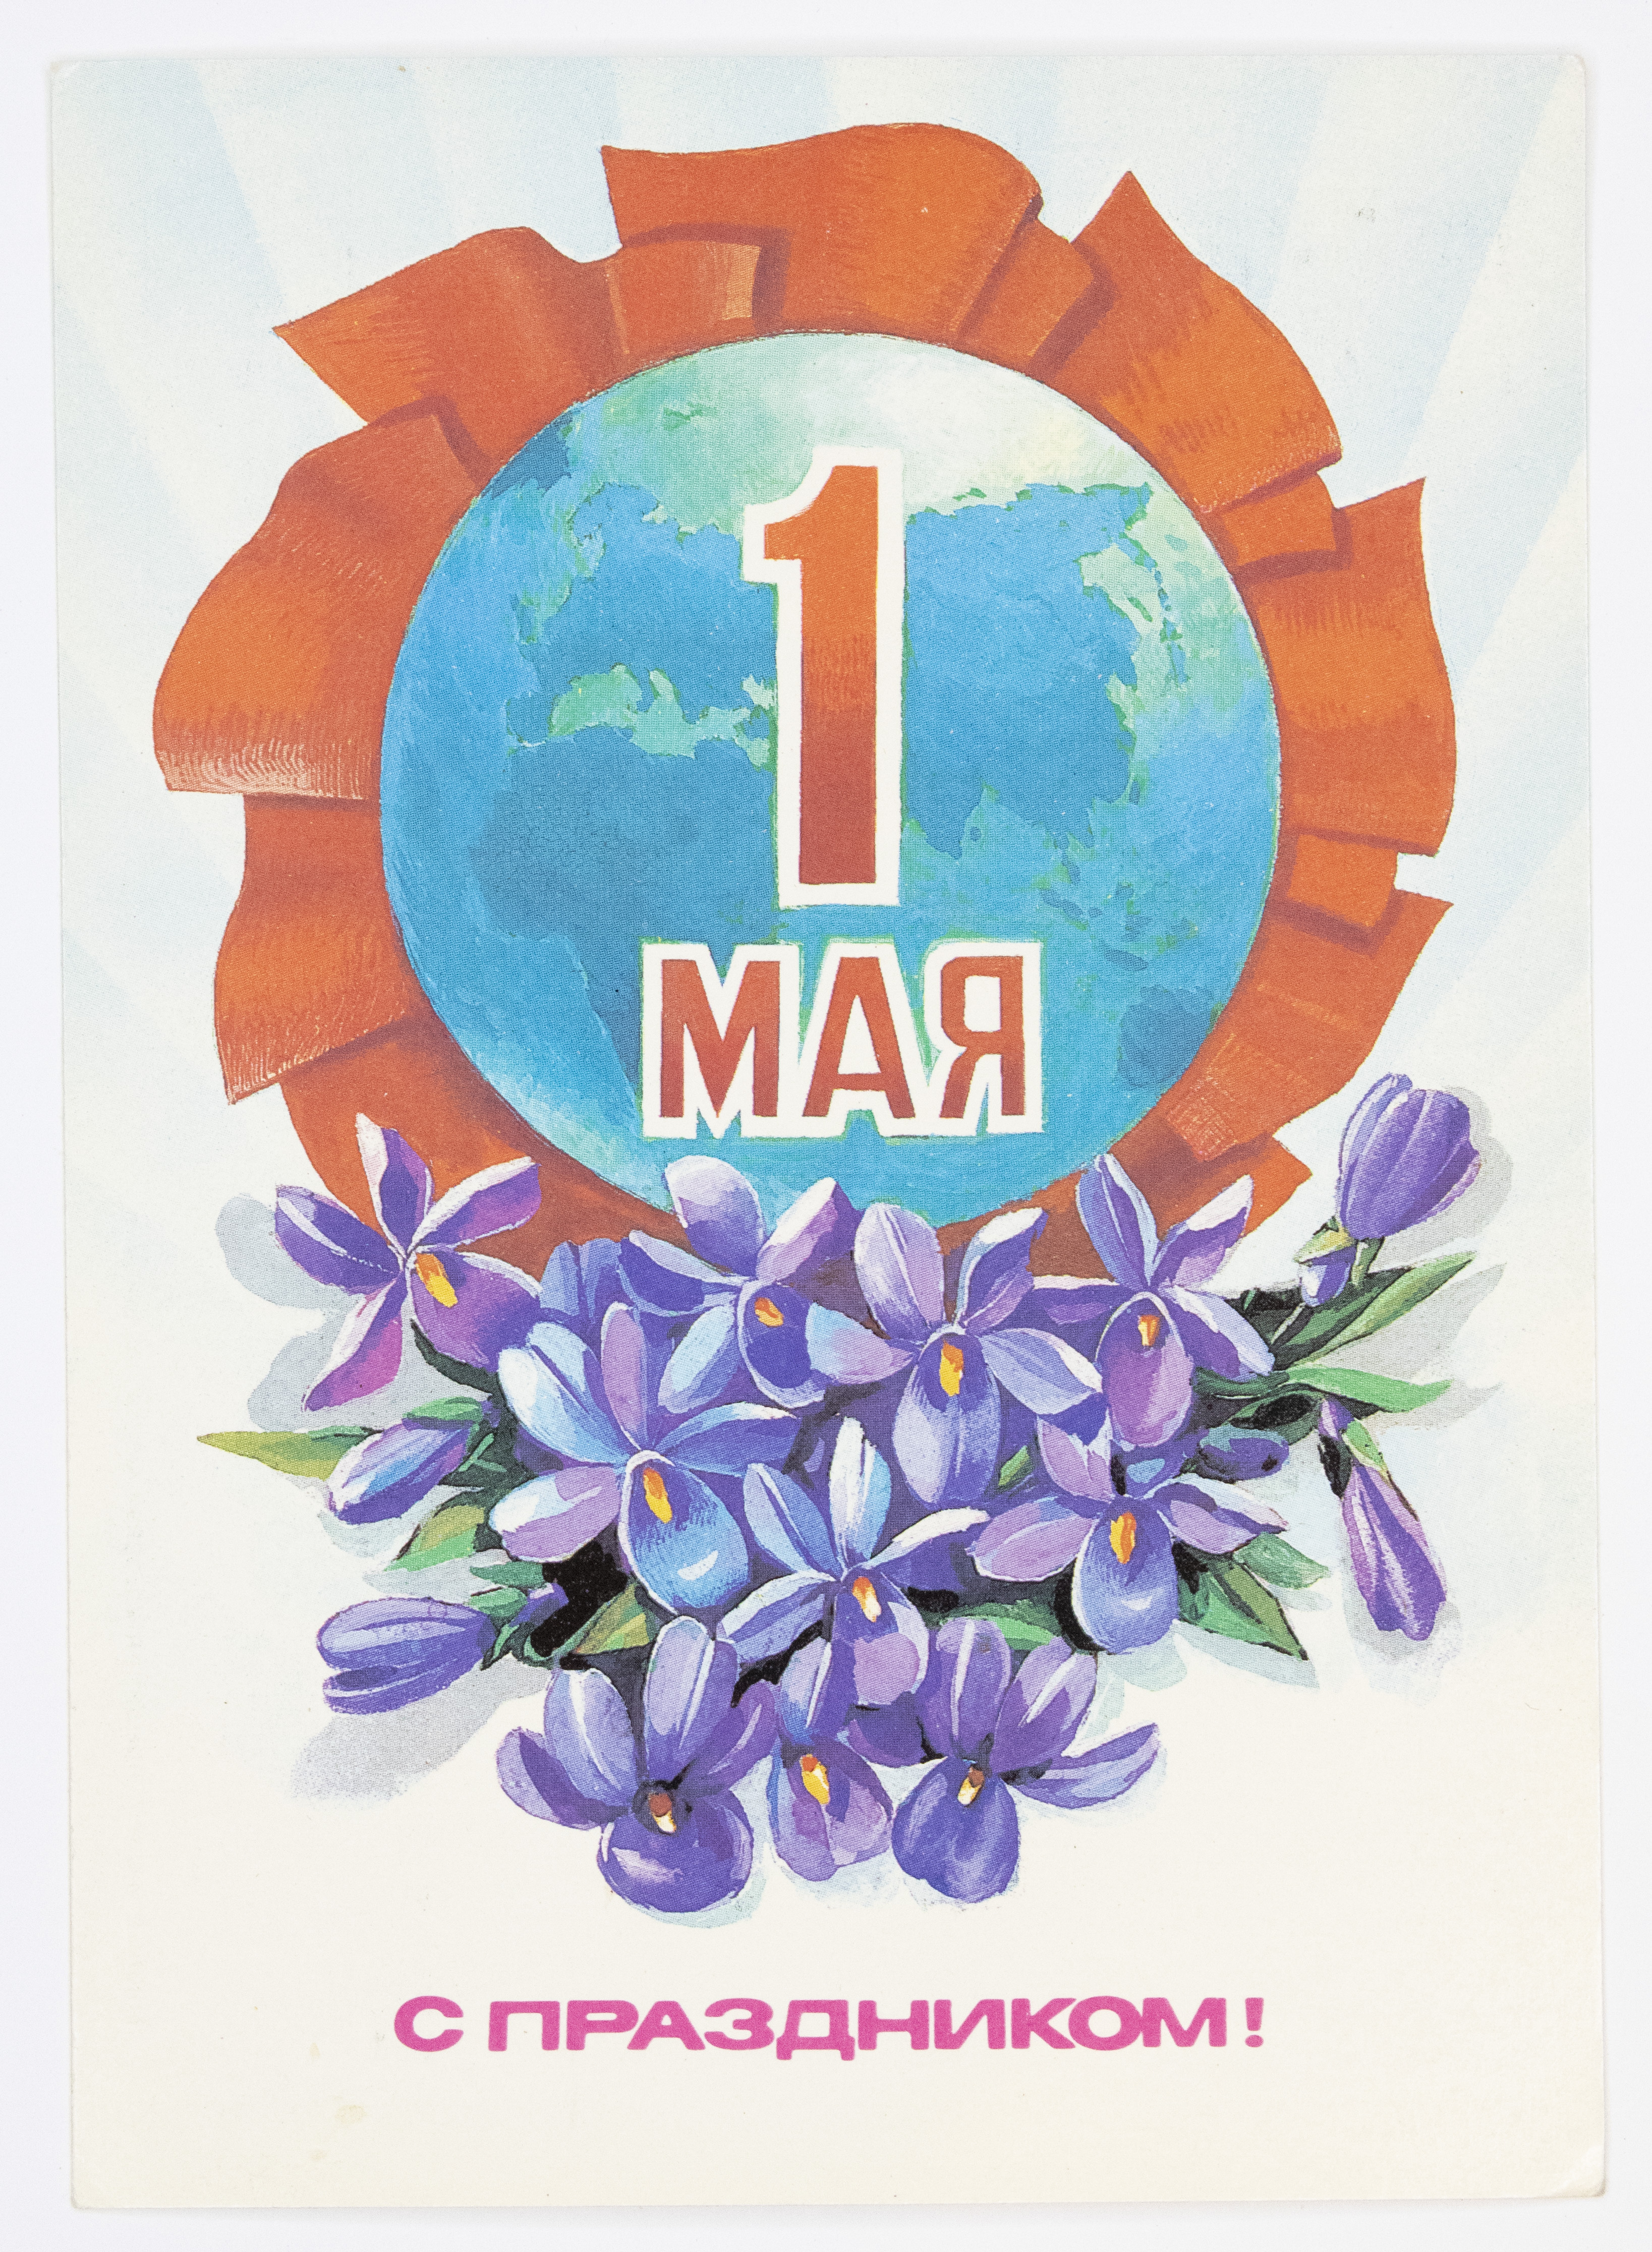 1 мая реклама. 1 Мая праздник. 1 Мая плакат. Открытки с 1 маем. Первое мая открытки.